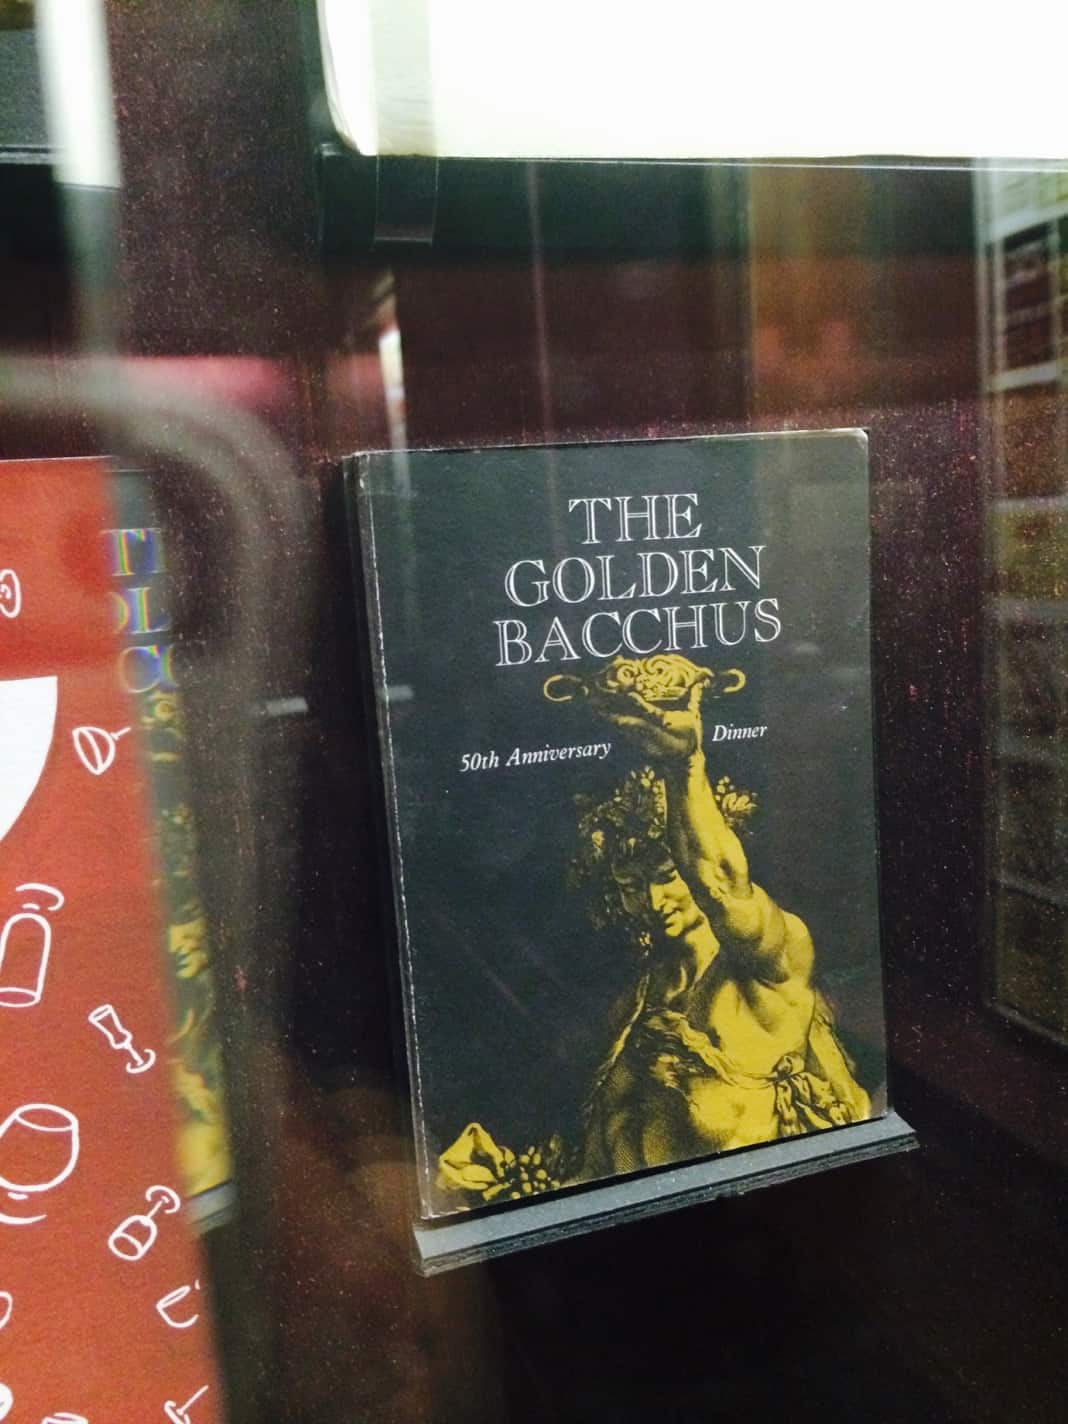 The Golden Bacchus